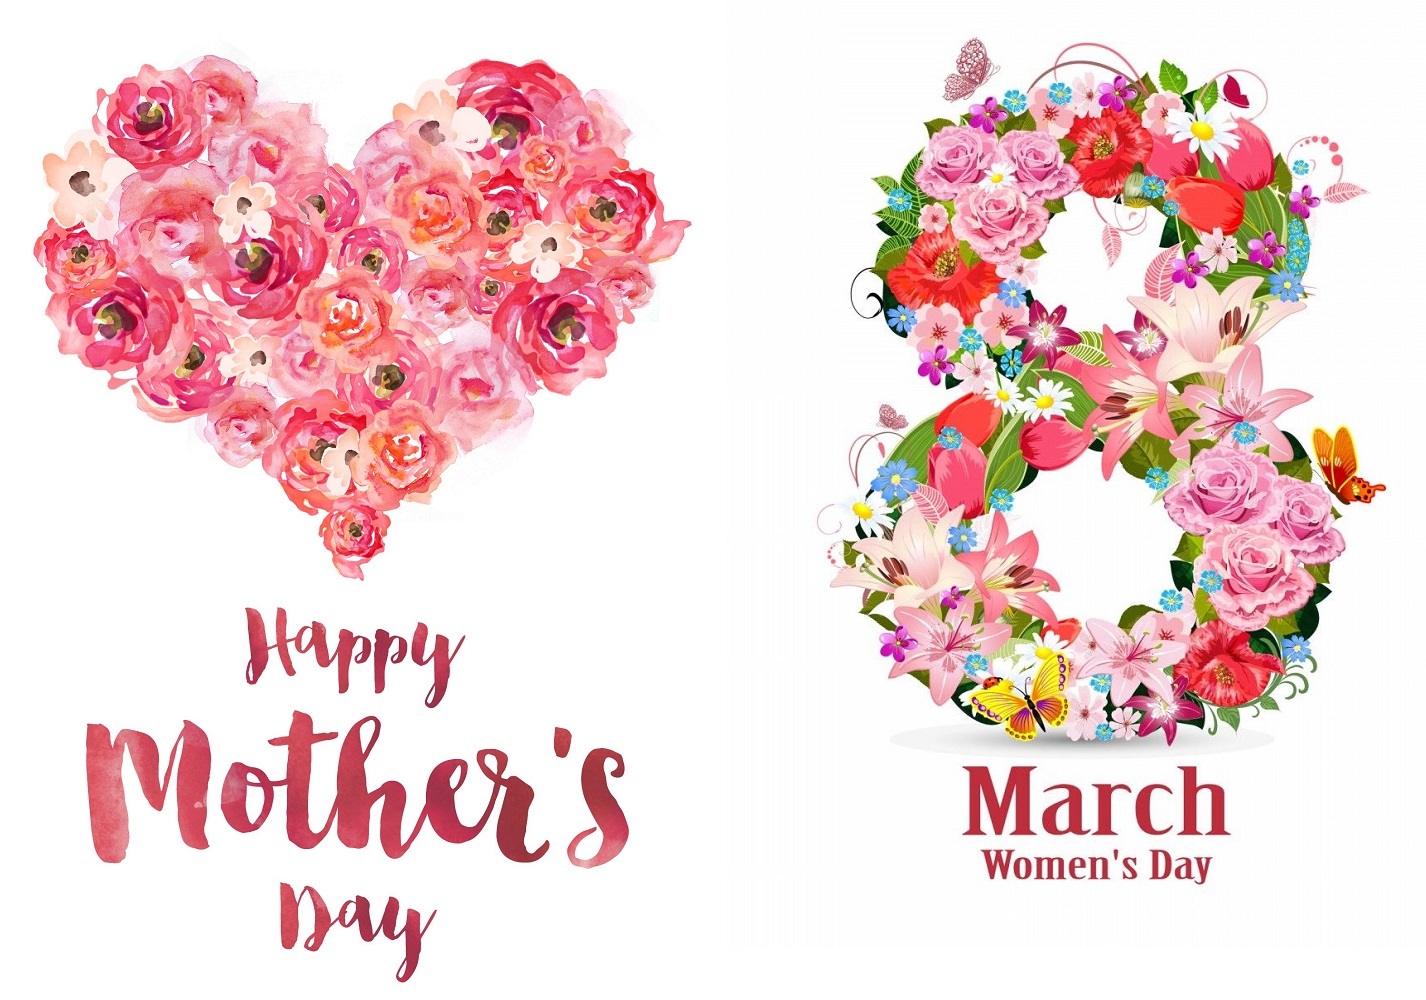 3 მარტი -  დედის დღე  და  8 მარტი - ქალთა საერთაშორისო დღე - უქმე დღეებია!